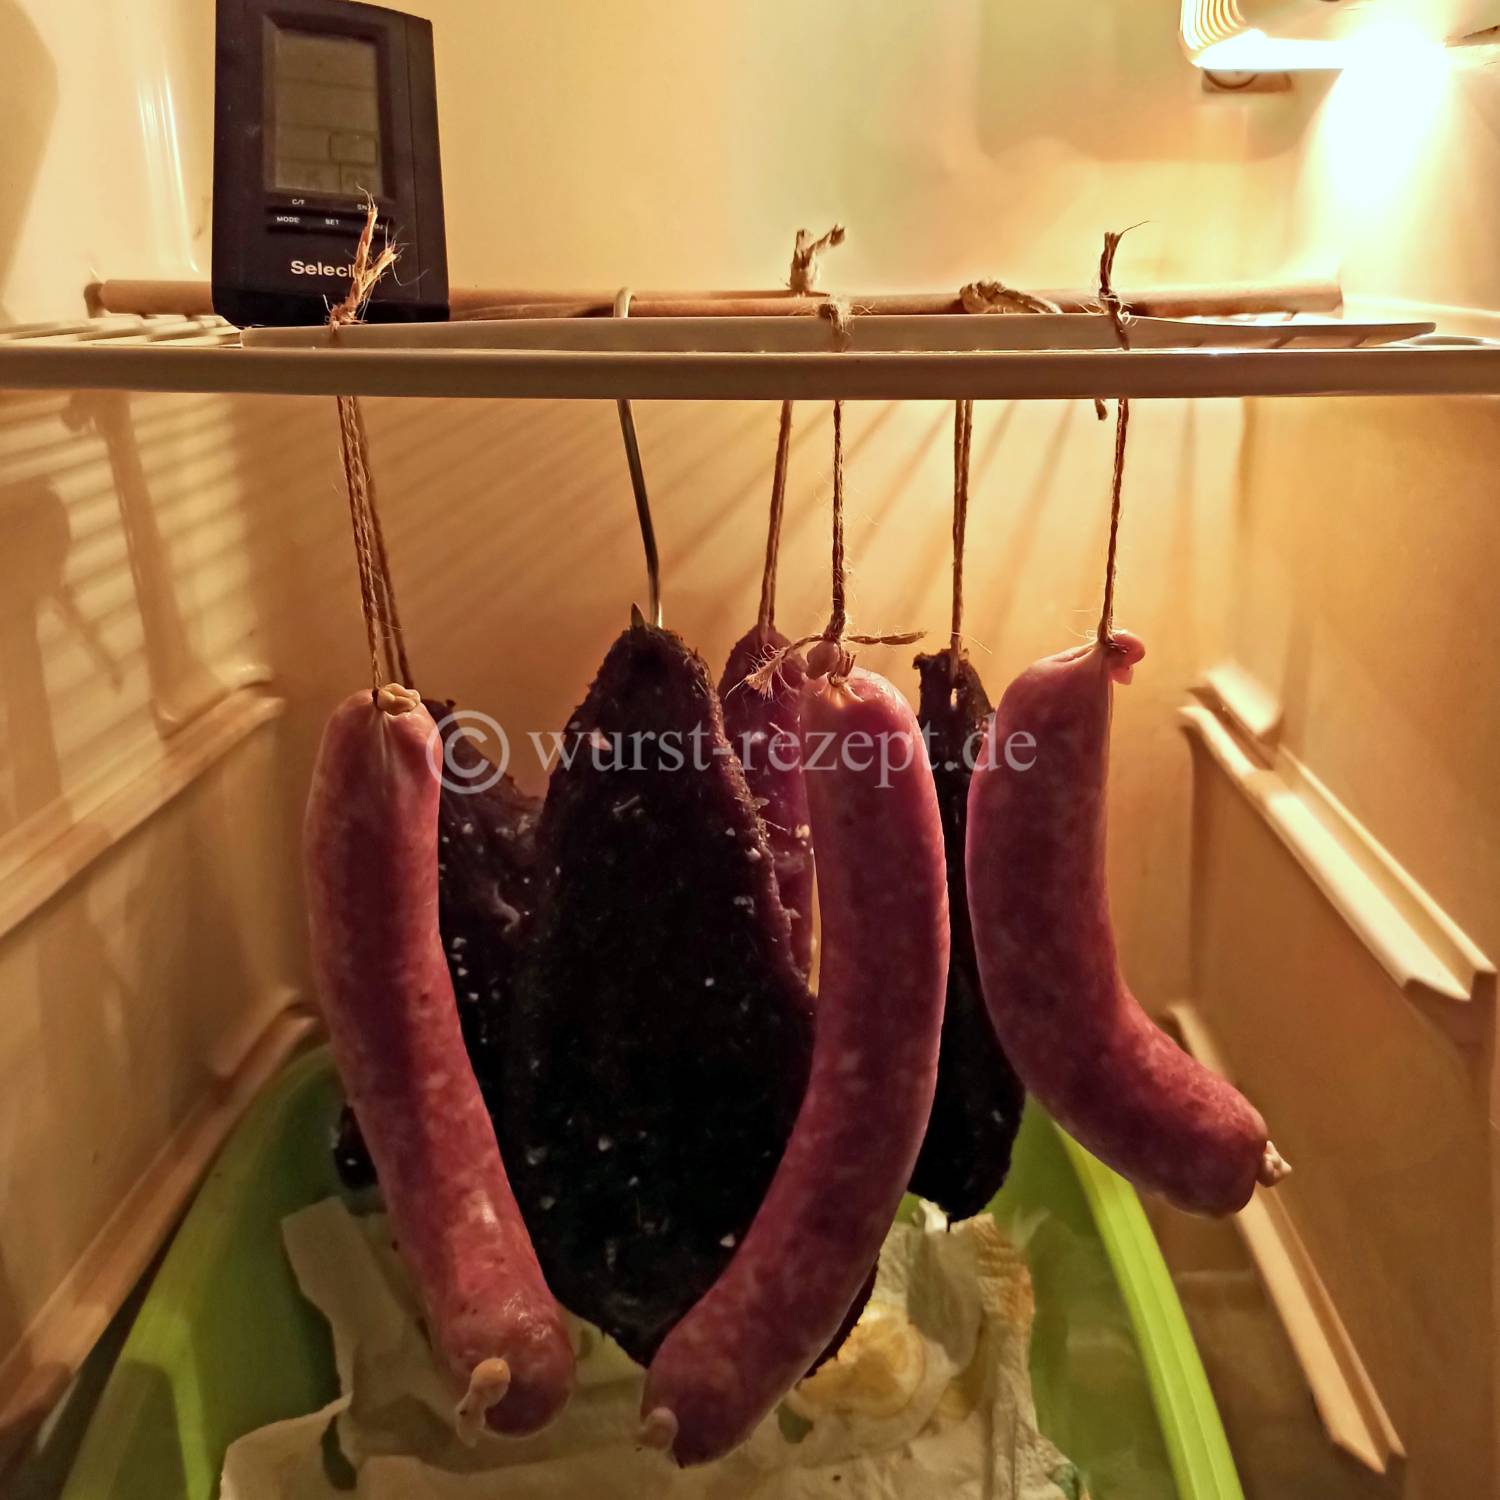 Die Salami Reifung im Kühlschrank.